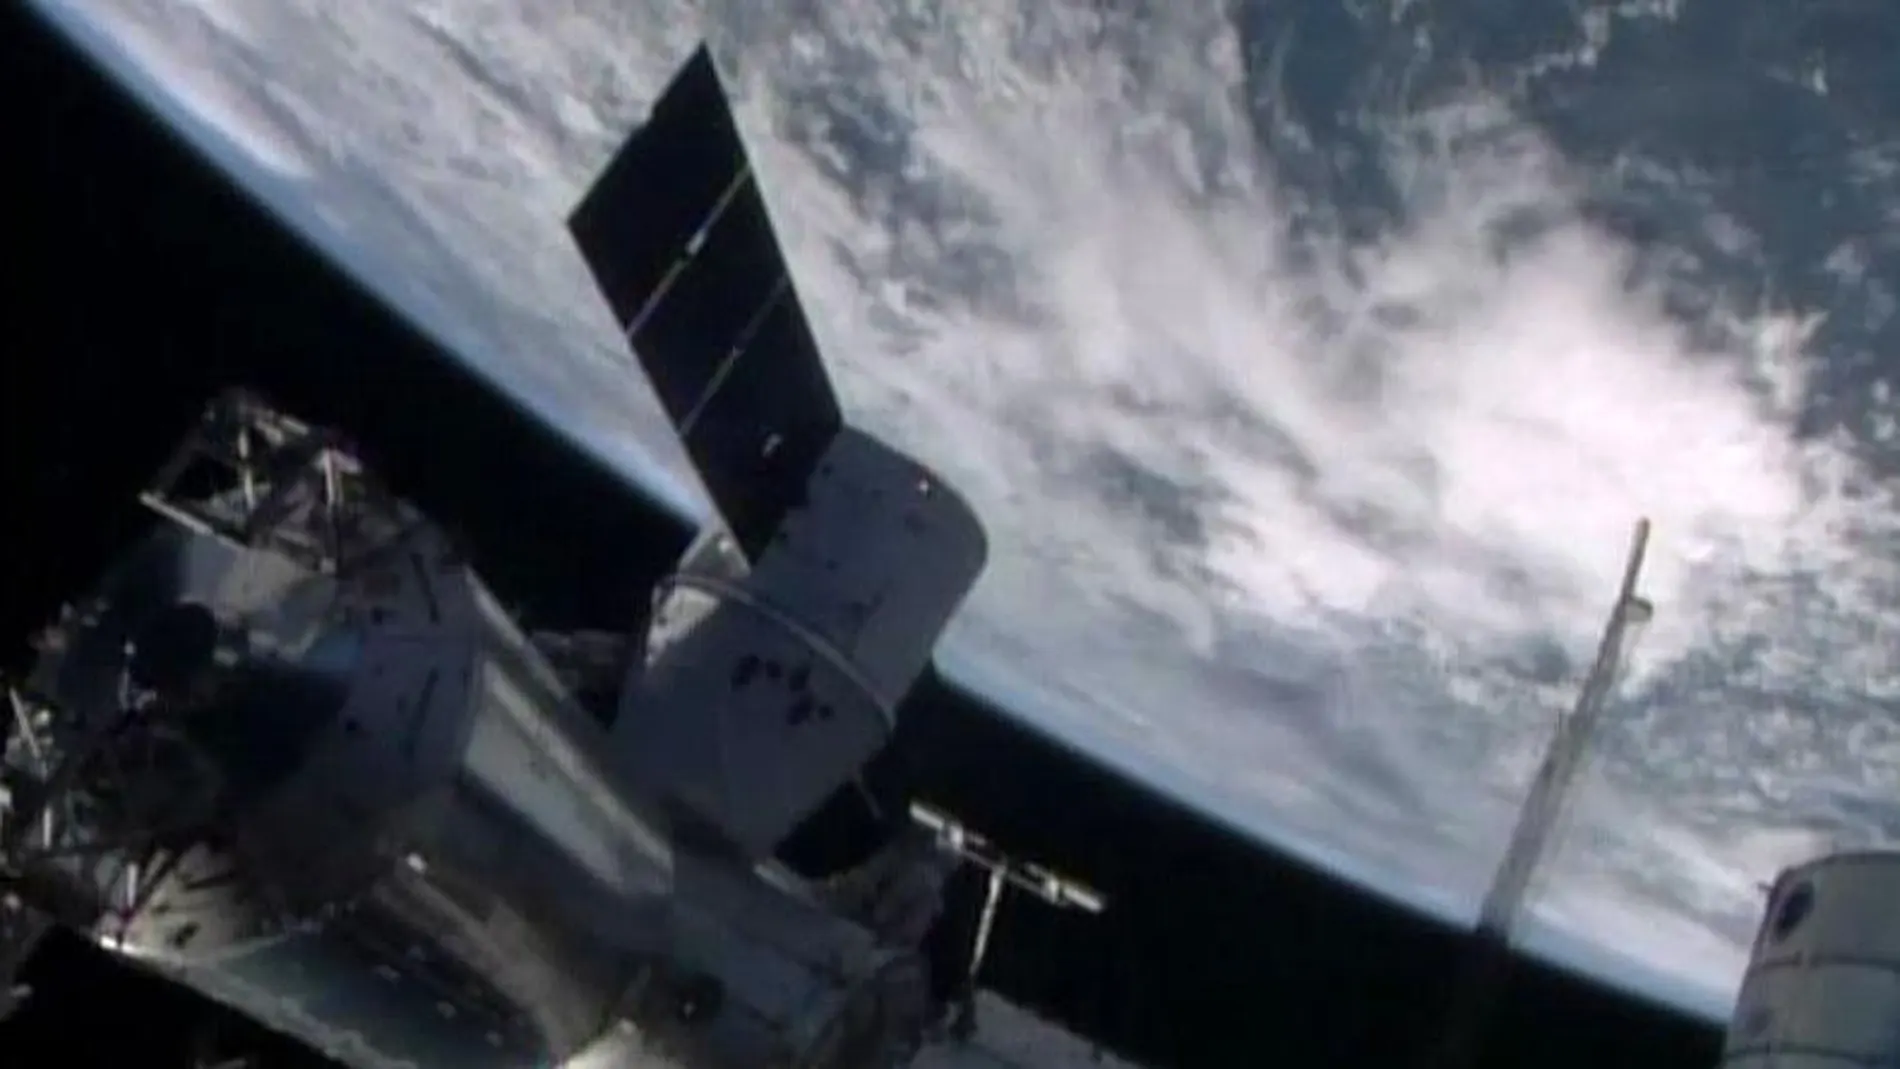 La cápsula estadounidense Dragon se acopla a la Estación Espacial Internacional